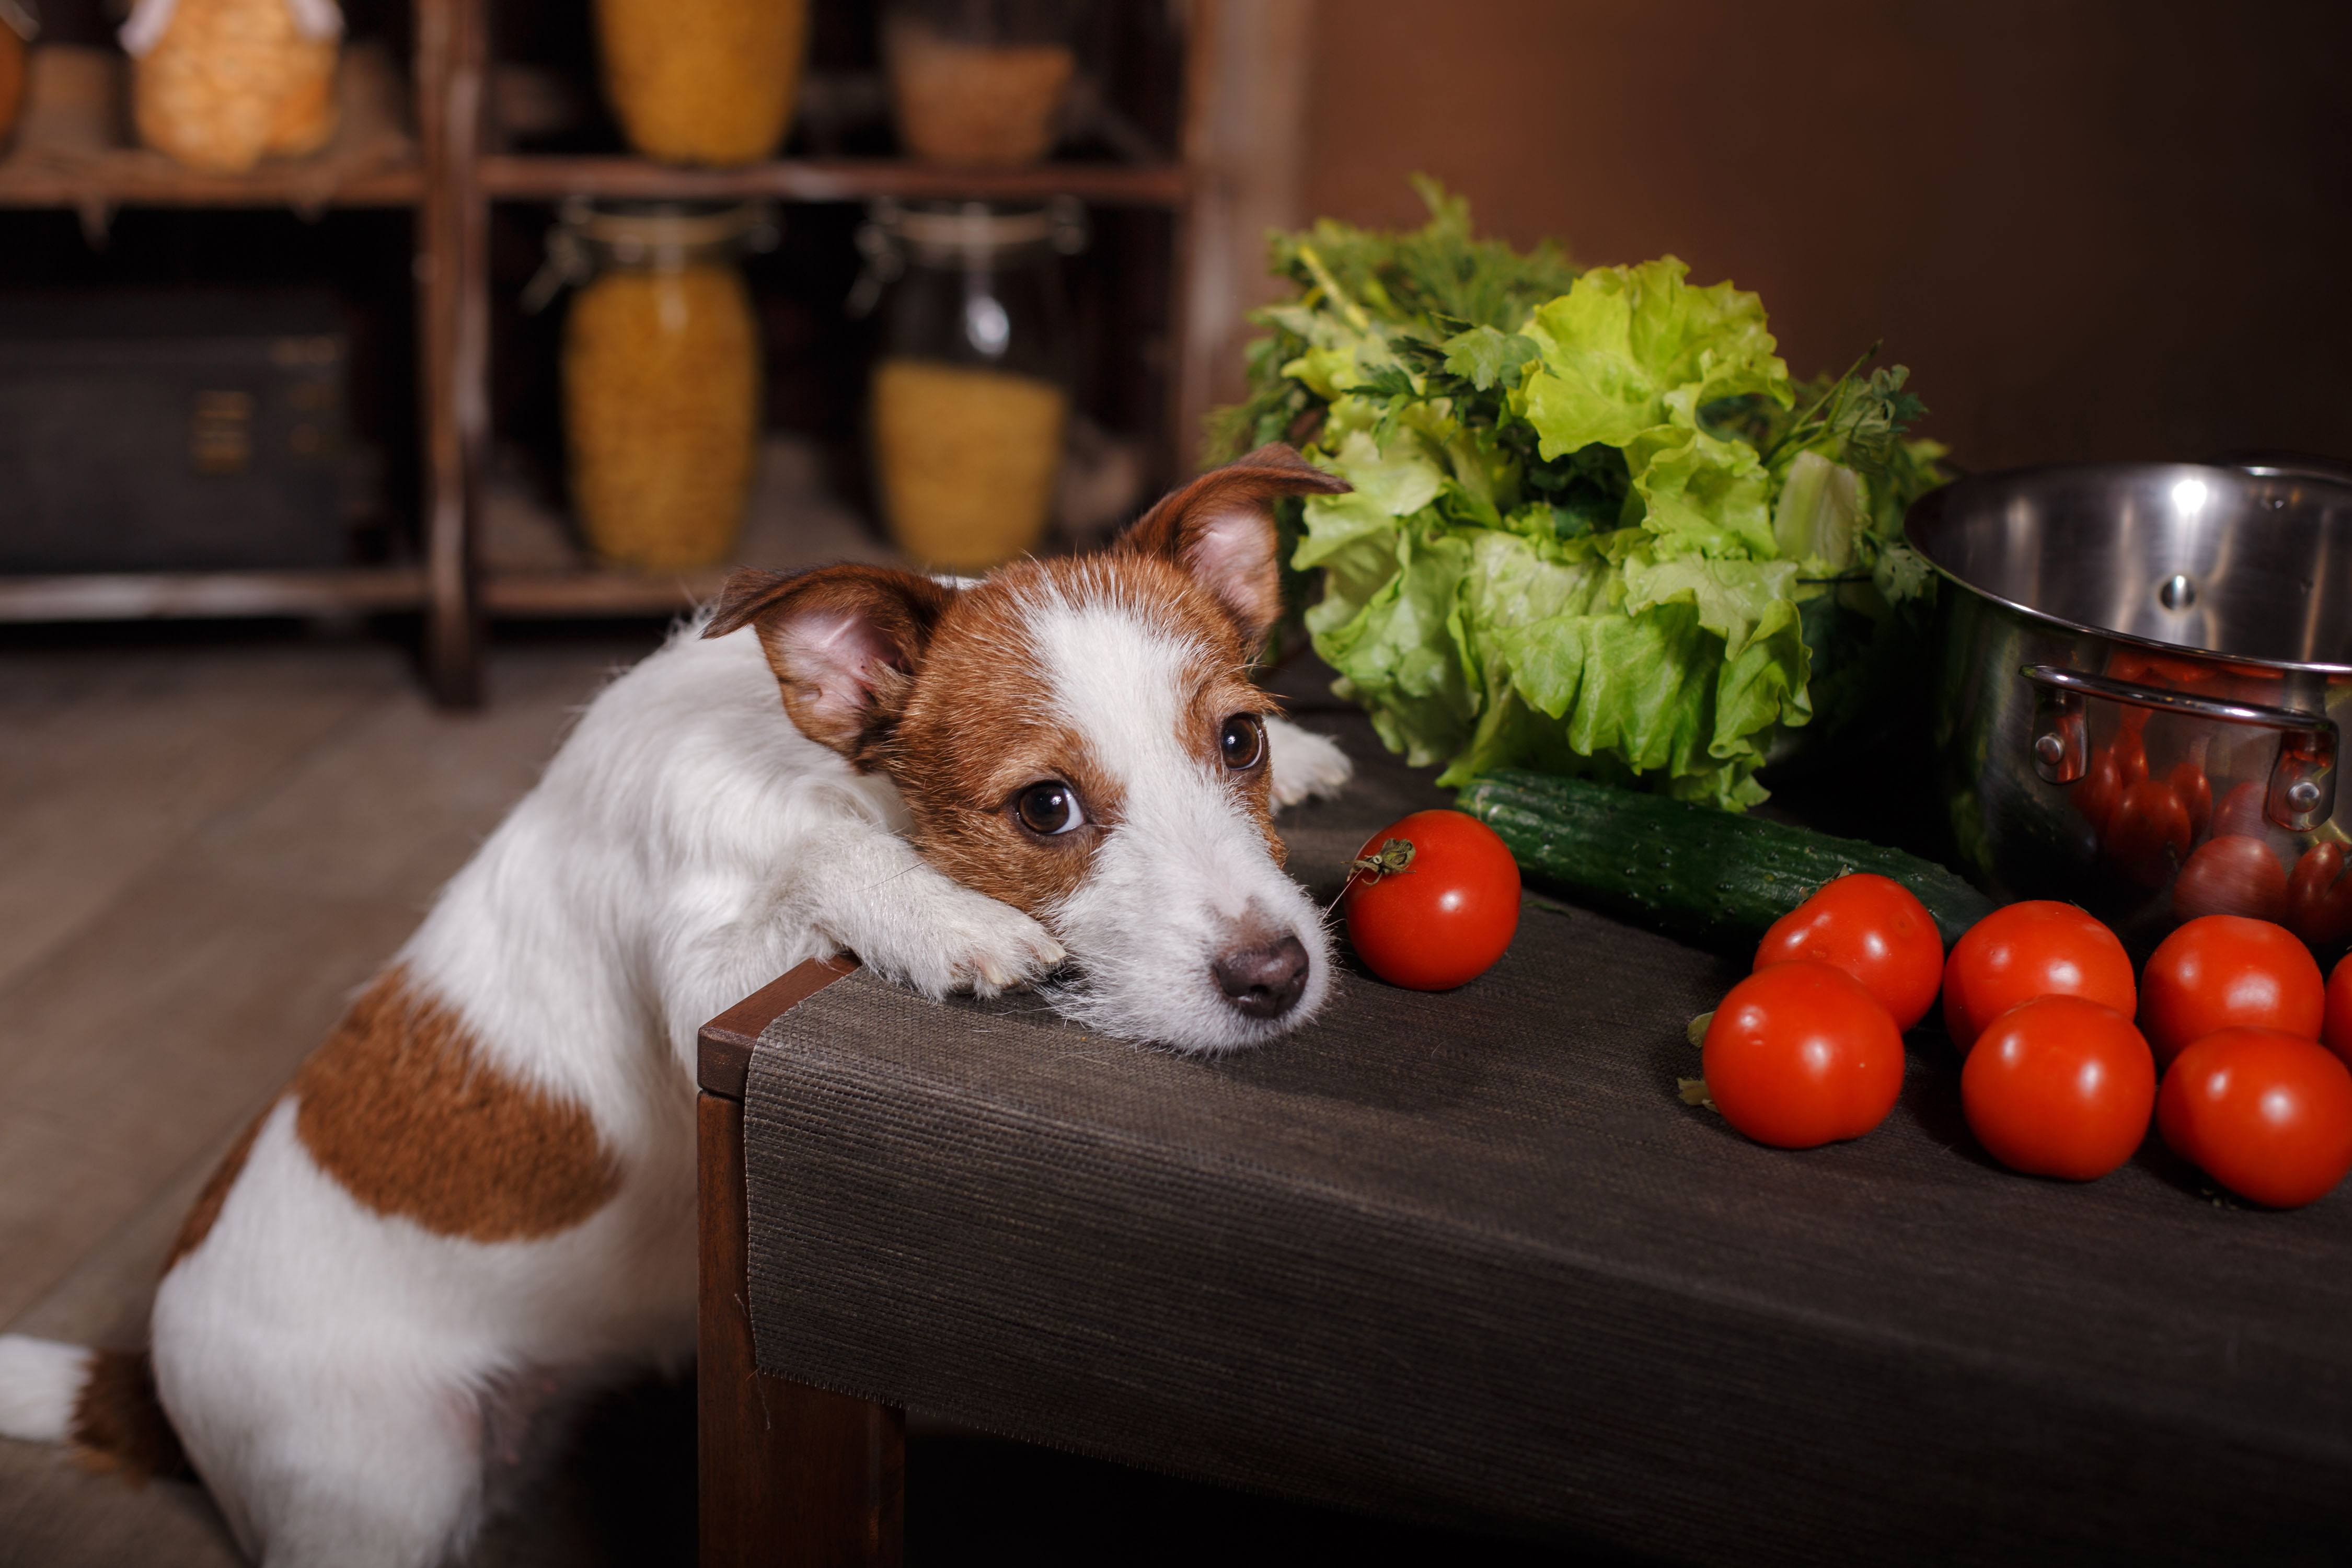 狗狗能吃小番茄吗，狗狗能吃西红柿吗？狗一次能吃多少番茄？番茄酱能给狗吃吗？